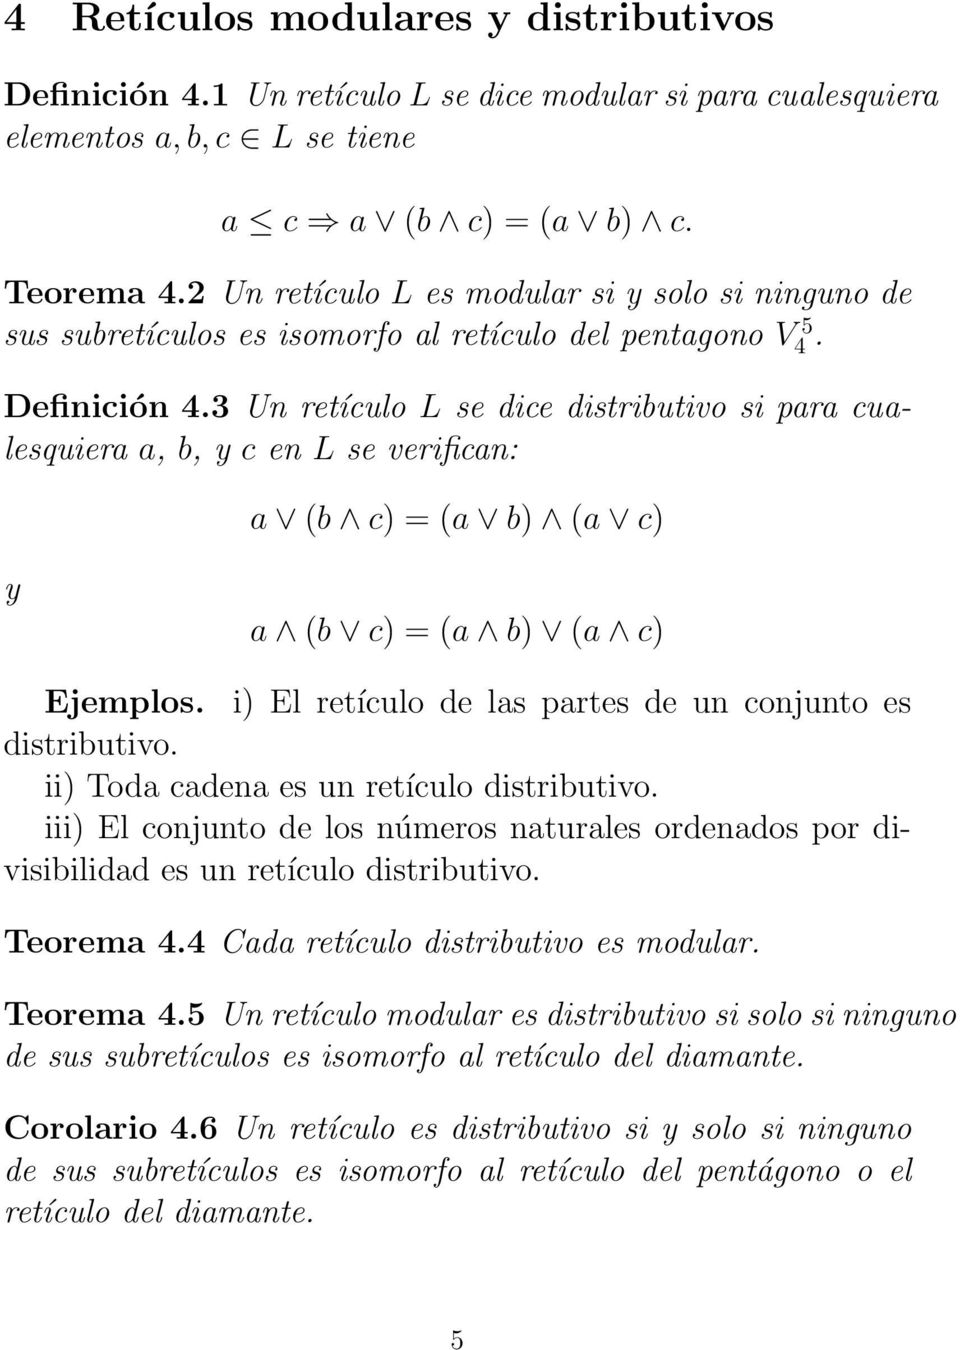 3 Un retículo L se dice distributivo si para cualesquiera a, b, y c en L se verifican: a (b c) = (a b) (a c) y a (b c) = (a b) (a c) Ejemplos.